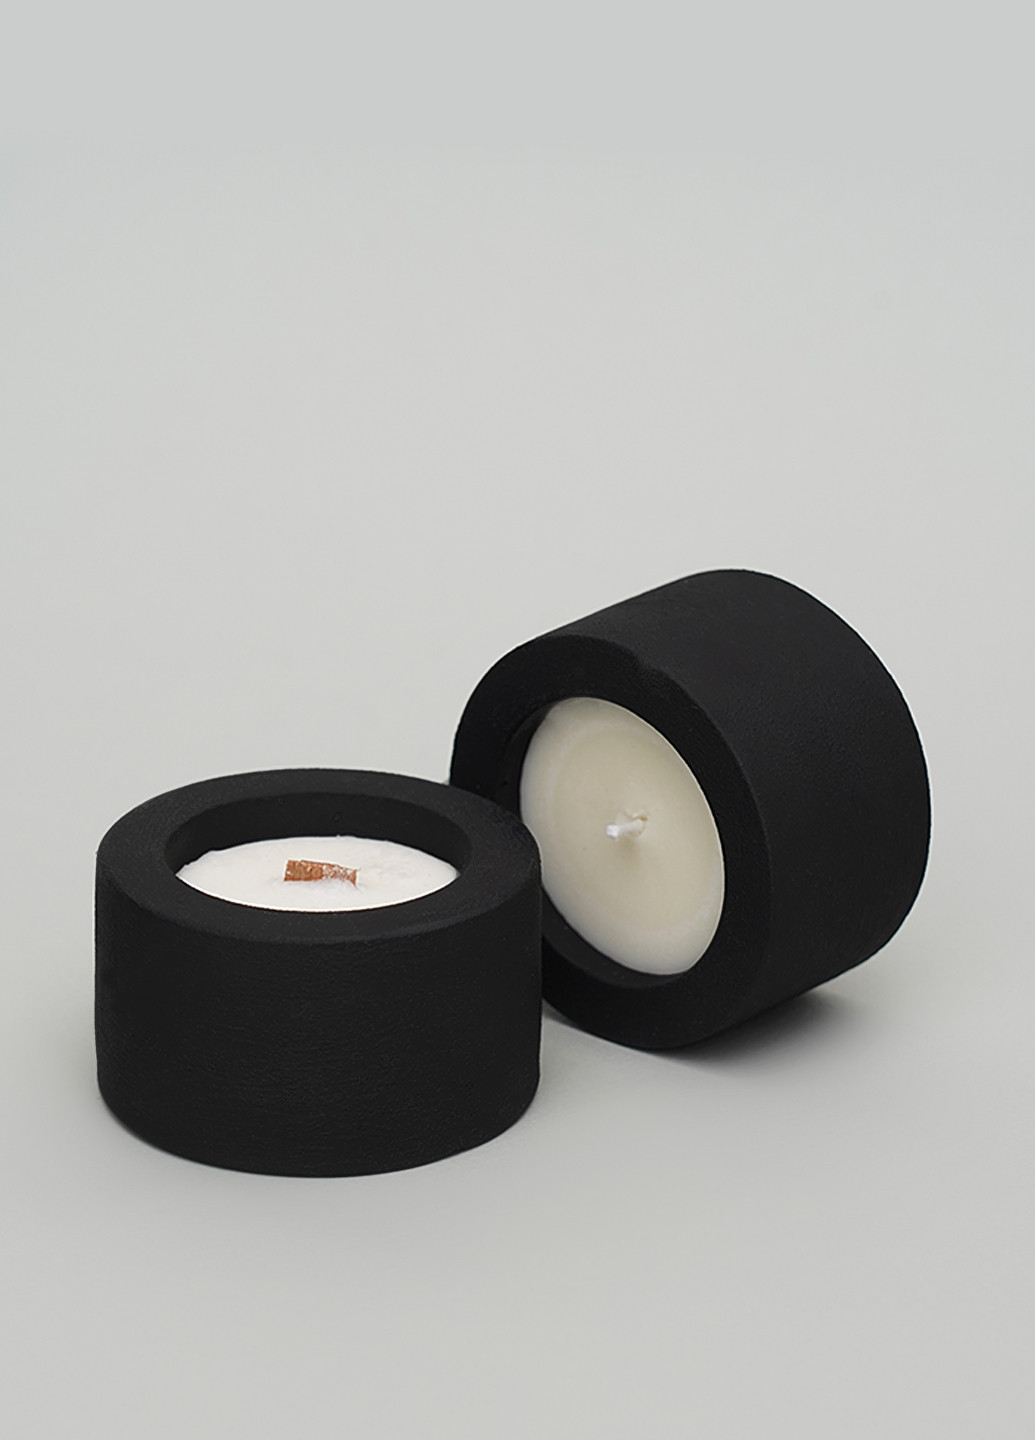 Свеча с ароматом глинтвейн и кардамон для надписи ваших пожеланий с хлопковым фитилем Svich Shop (260264694)